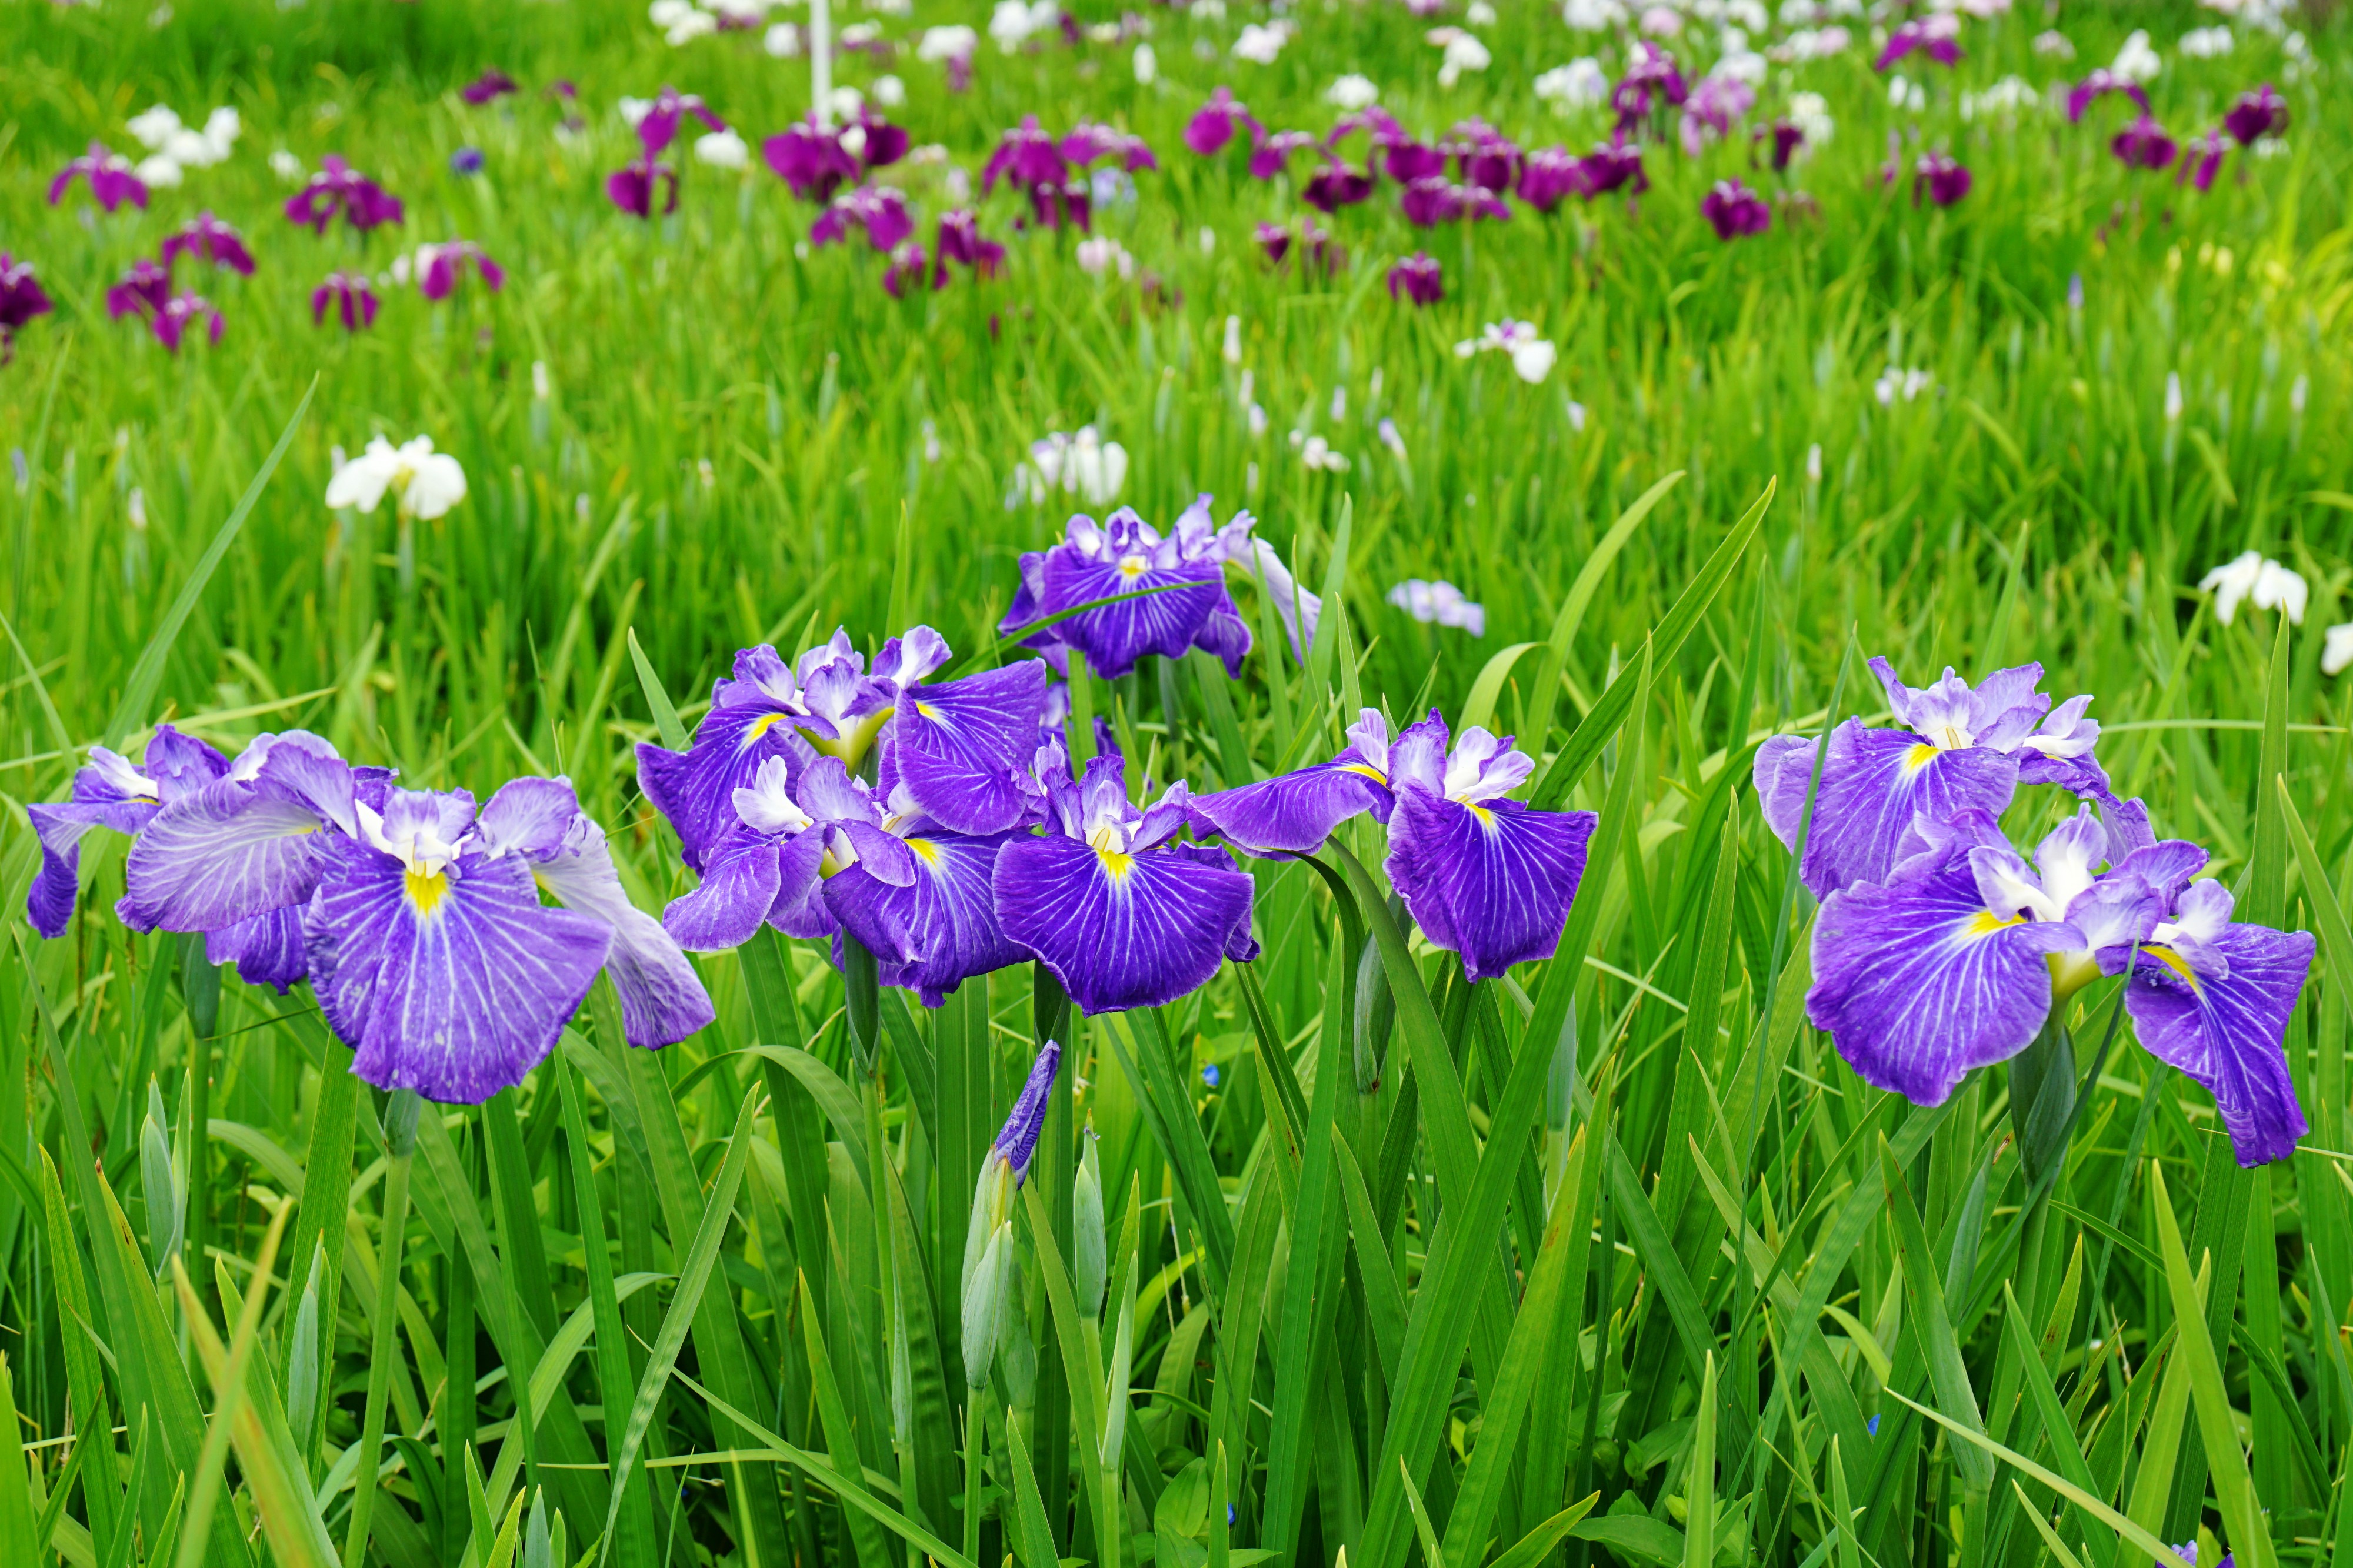 140614 Yagyu Iris Garden Nara Japan02bs5